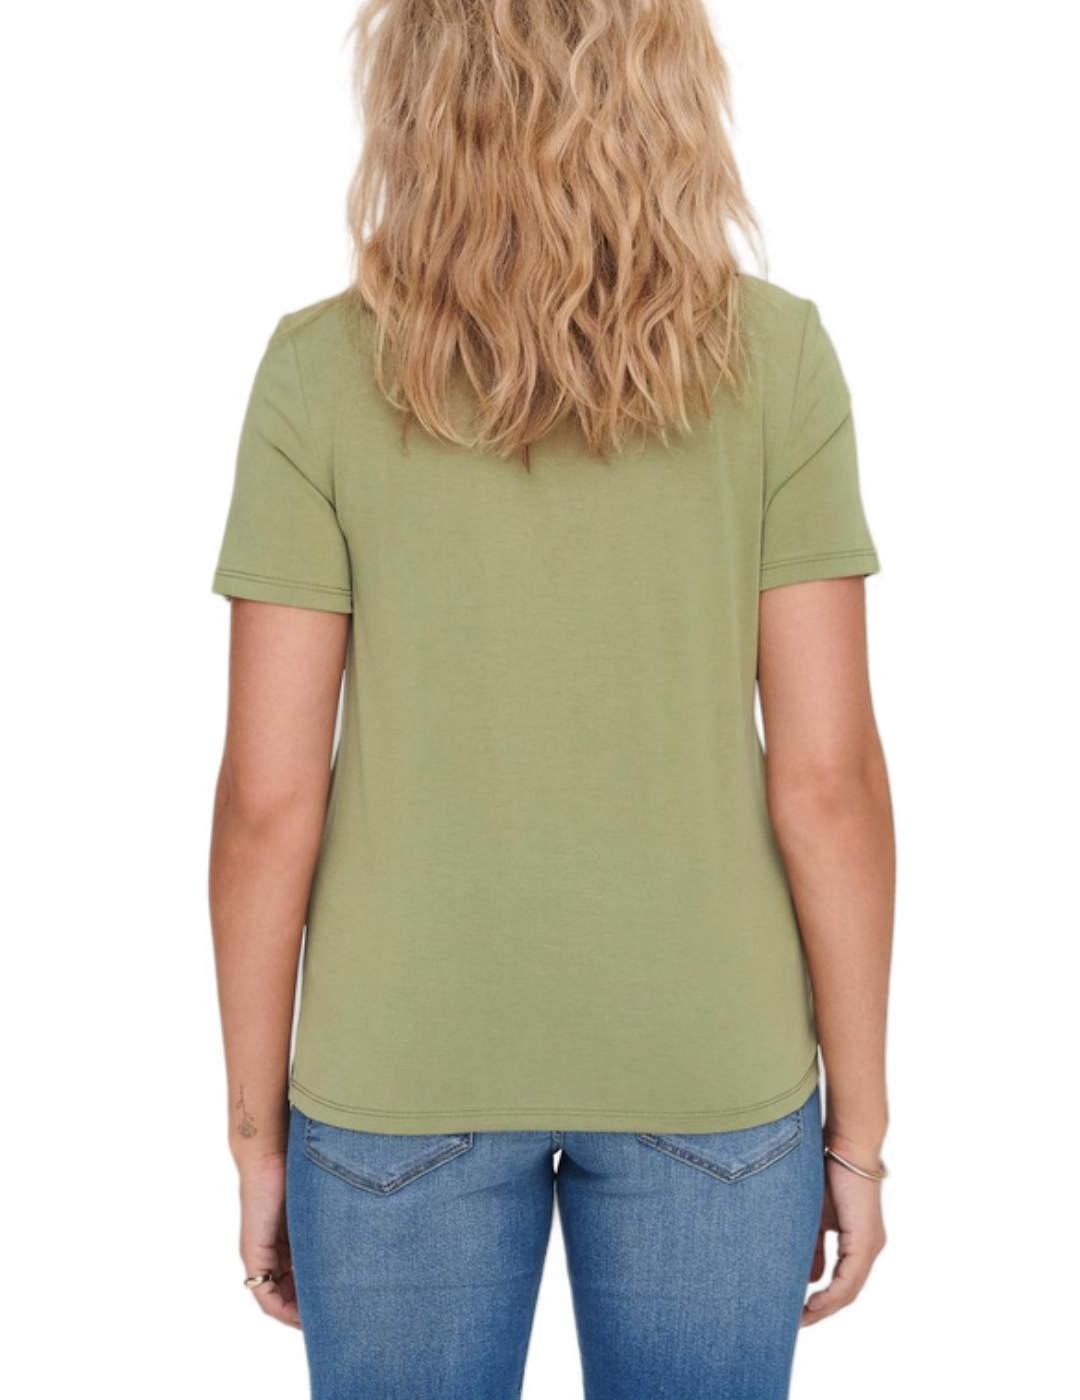 Camiseta Only Free verde manga corta para mujer